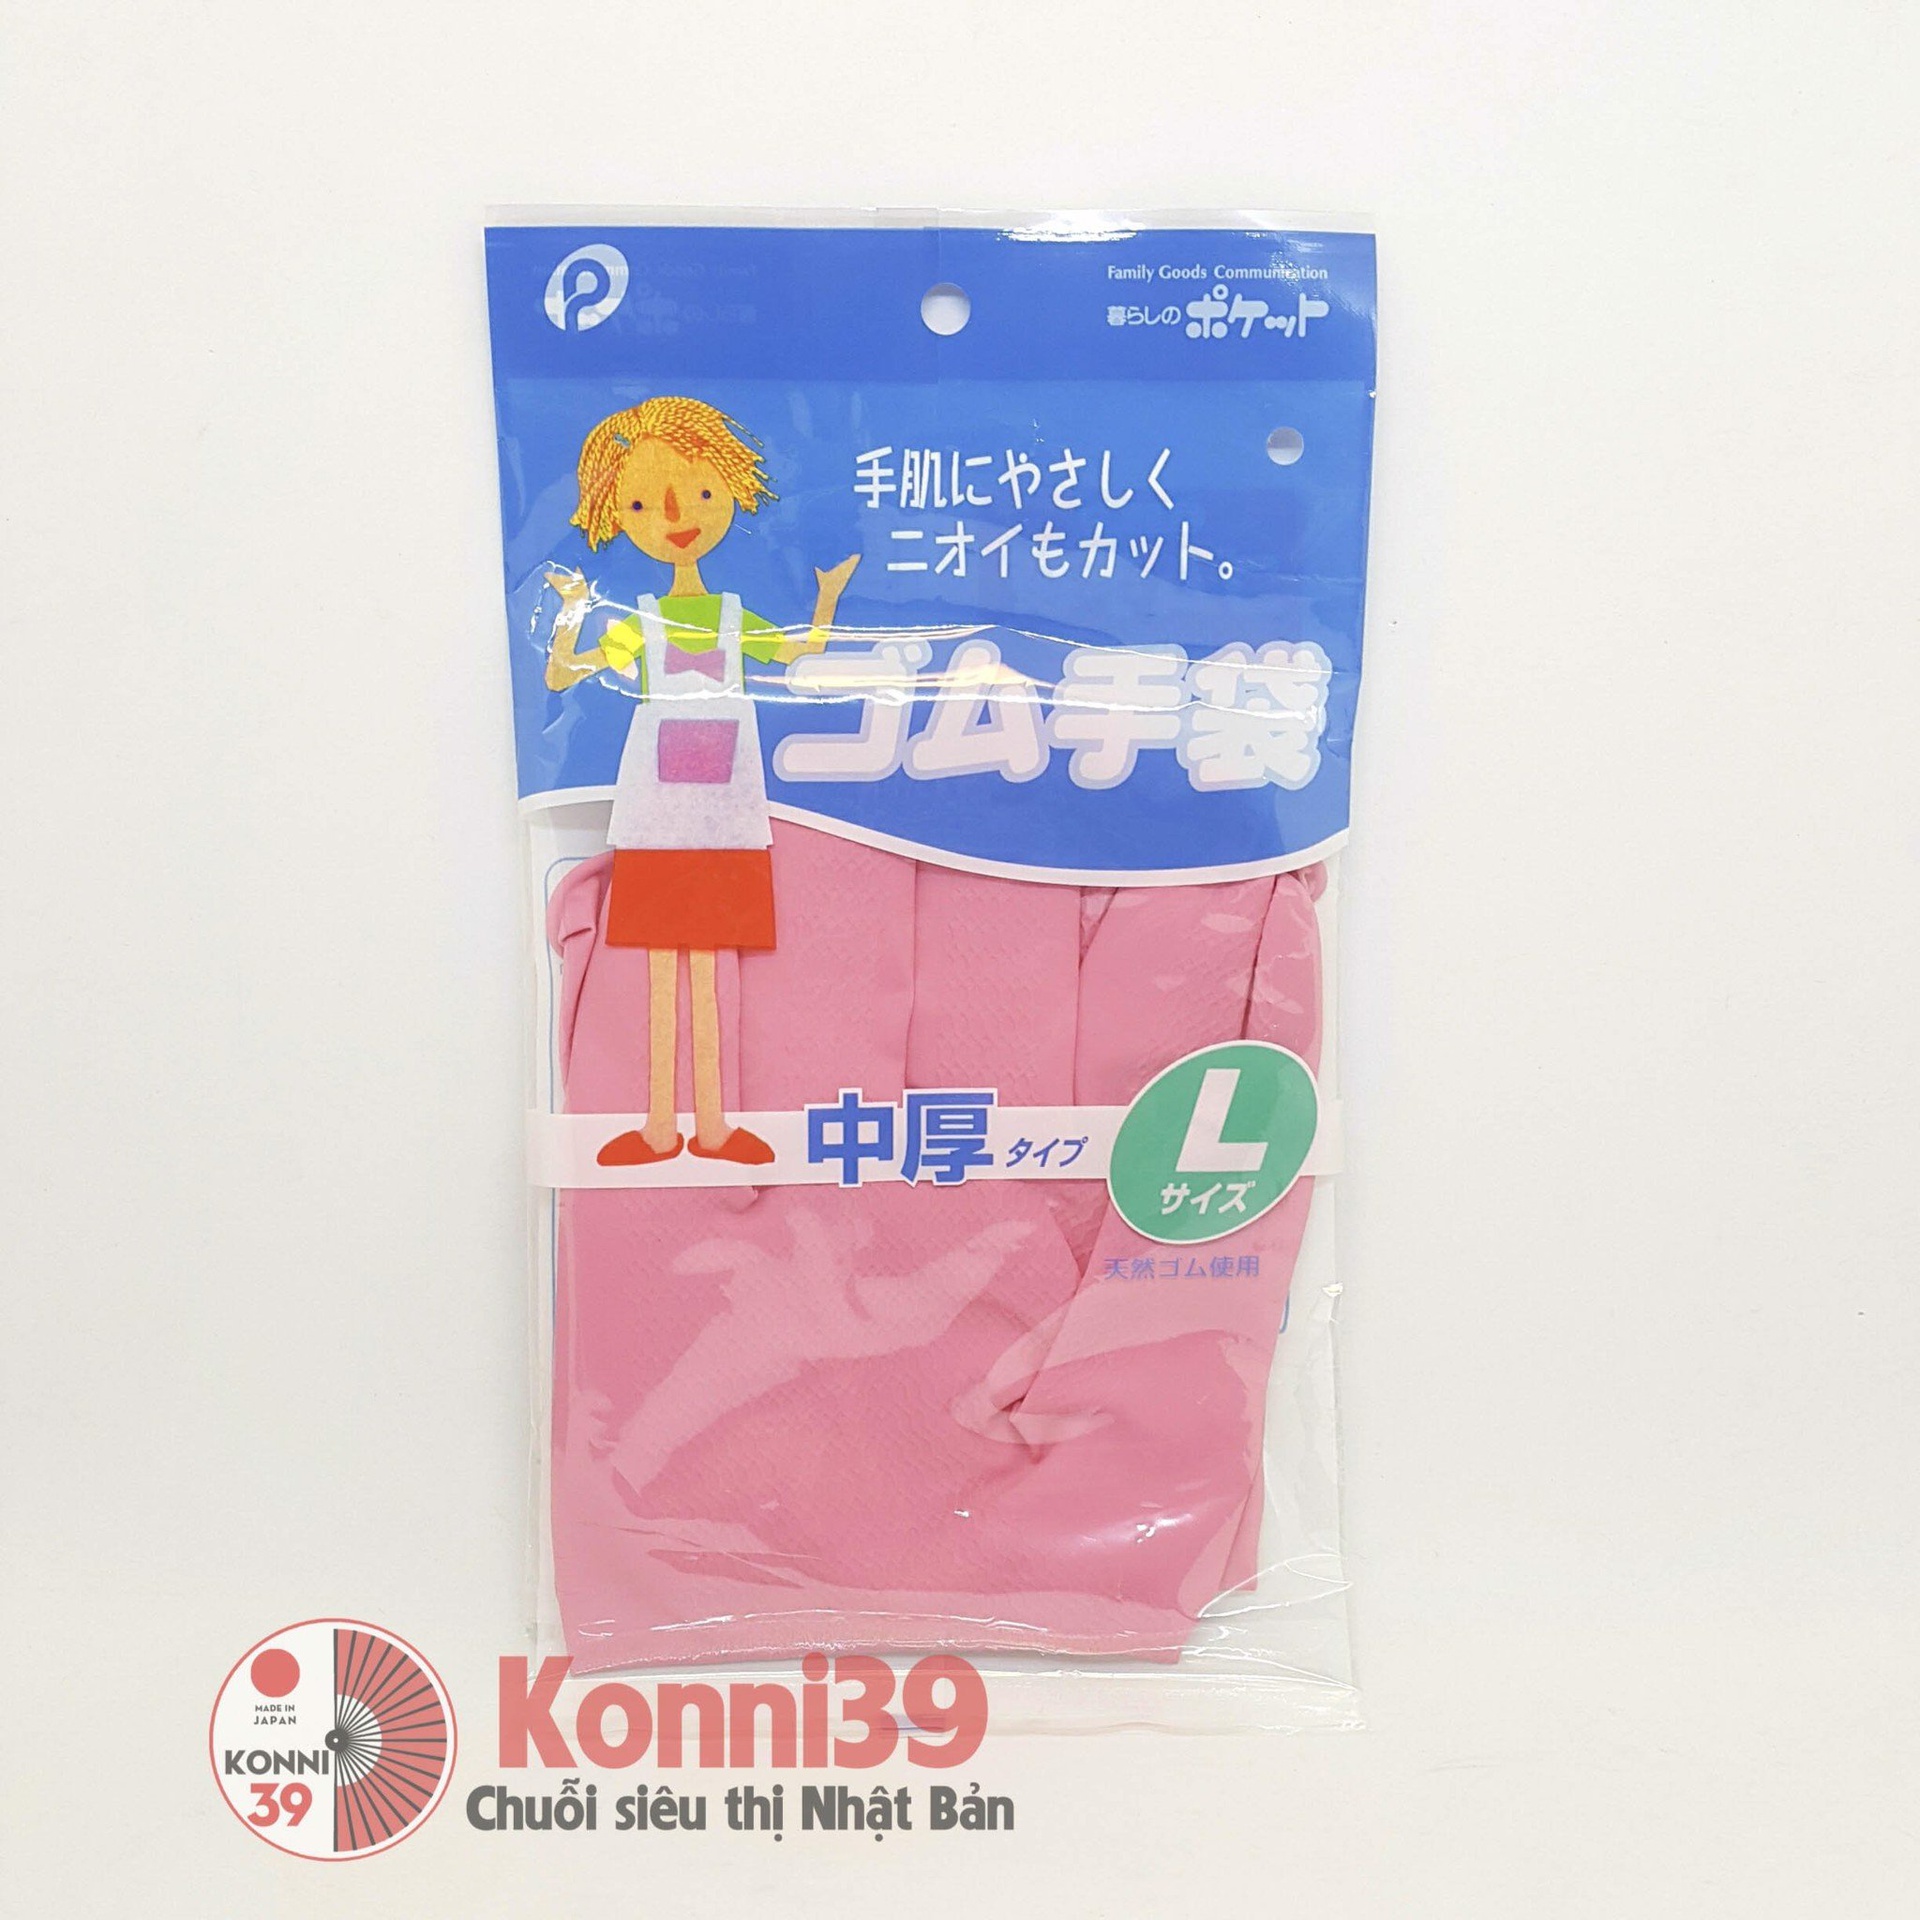 Găng tay cao su size L (hồng) -p10-Hàng Nhật đồng giá Konni39